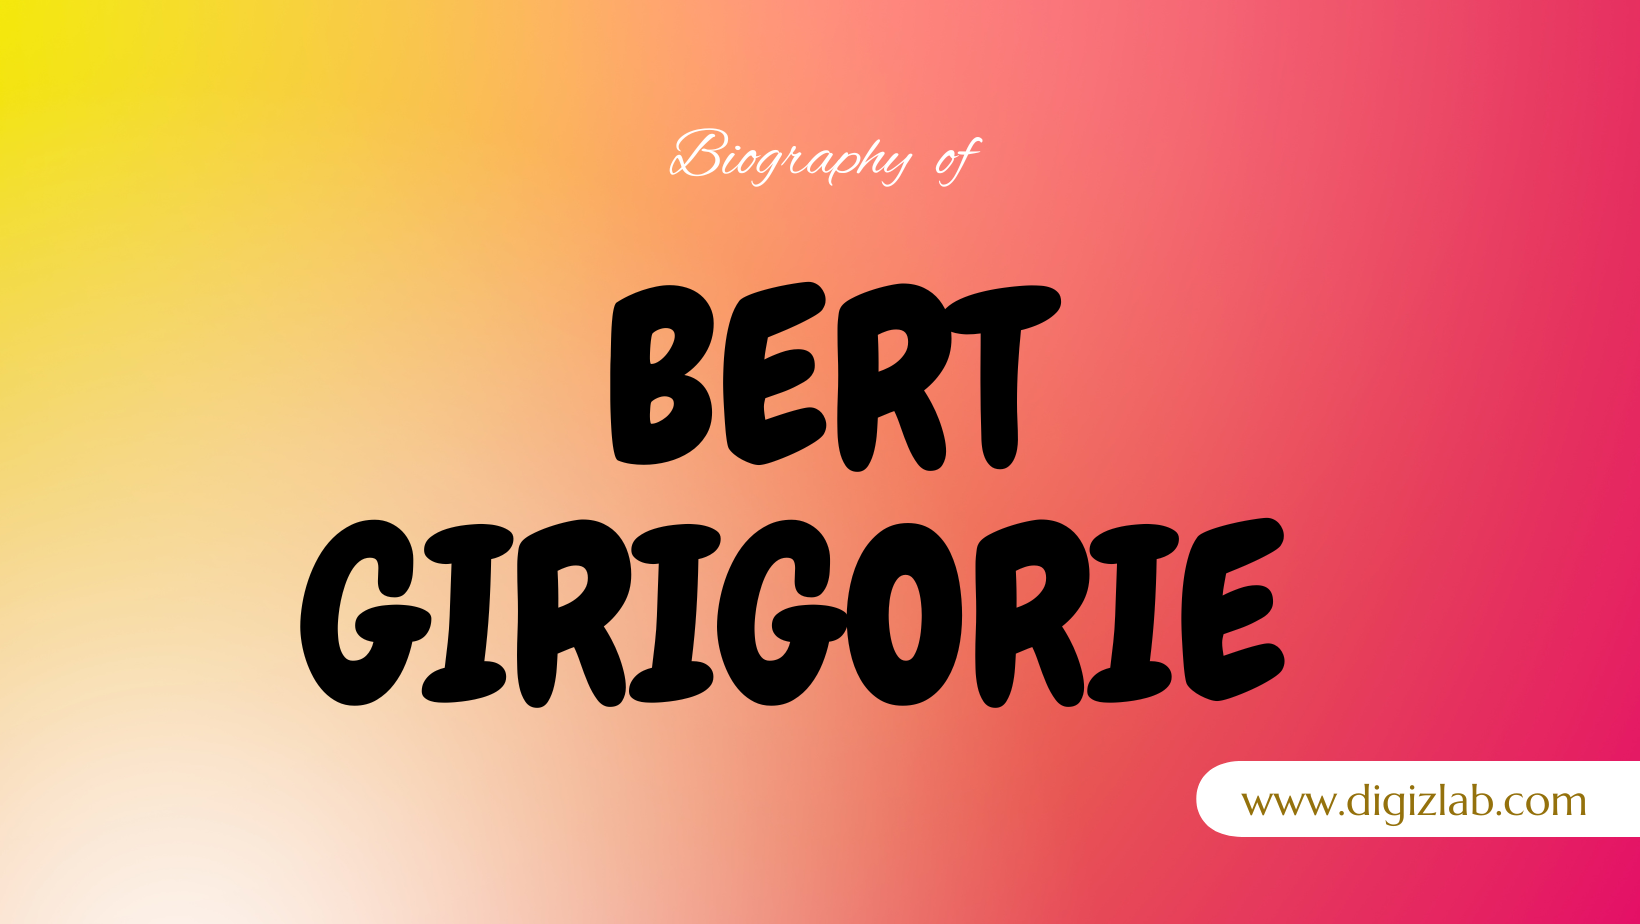 Bert Girigorie